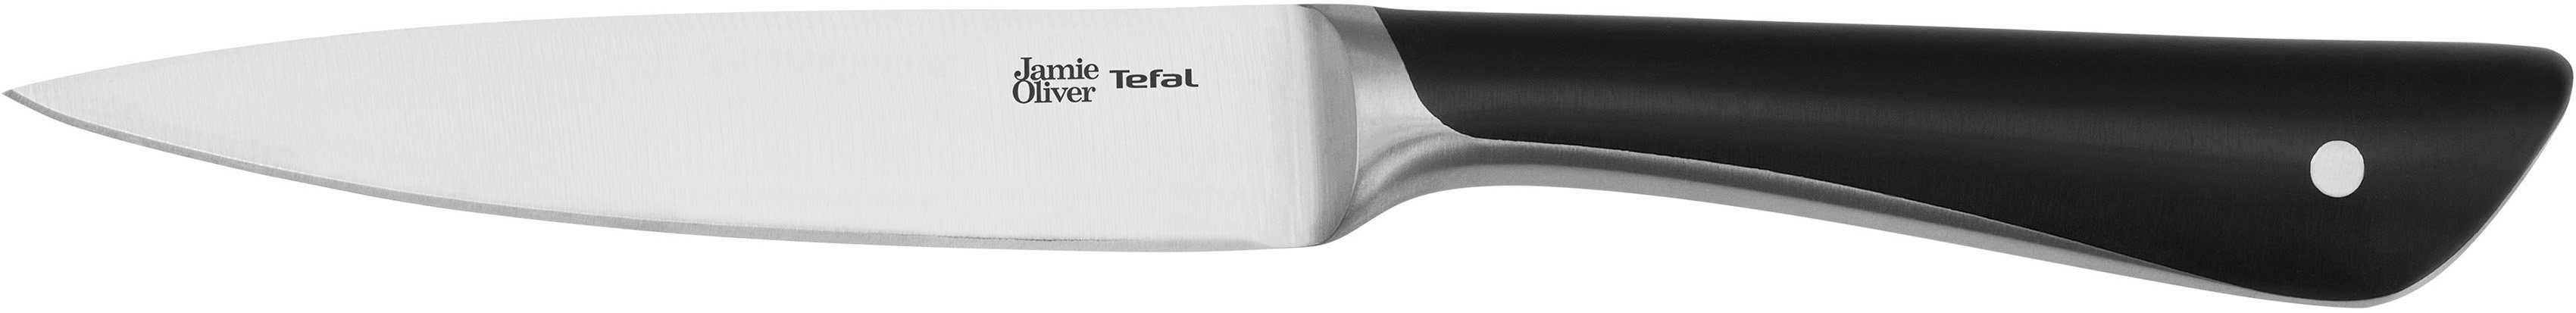 Tefal Allzweckmesser Jamie Oliver K26709, hohe Leistung, unverwechselbares Design, widerstandsfähig/langlebig